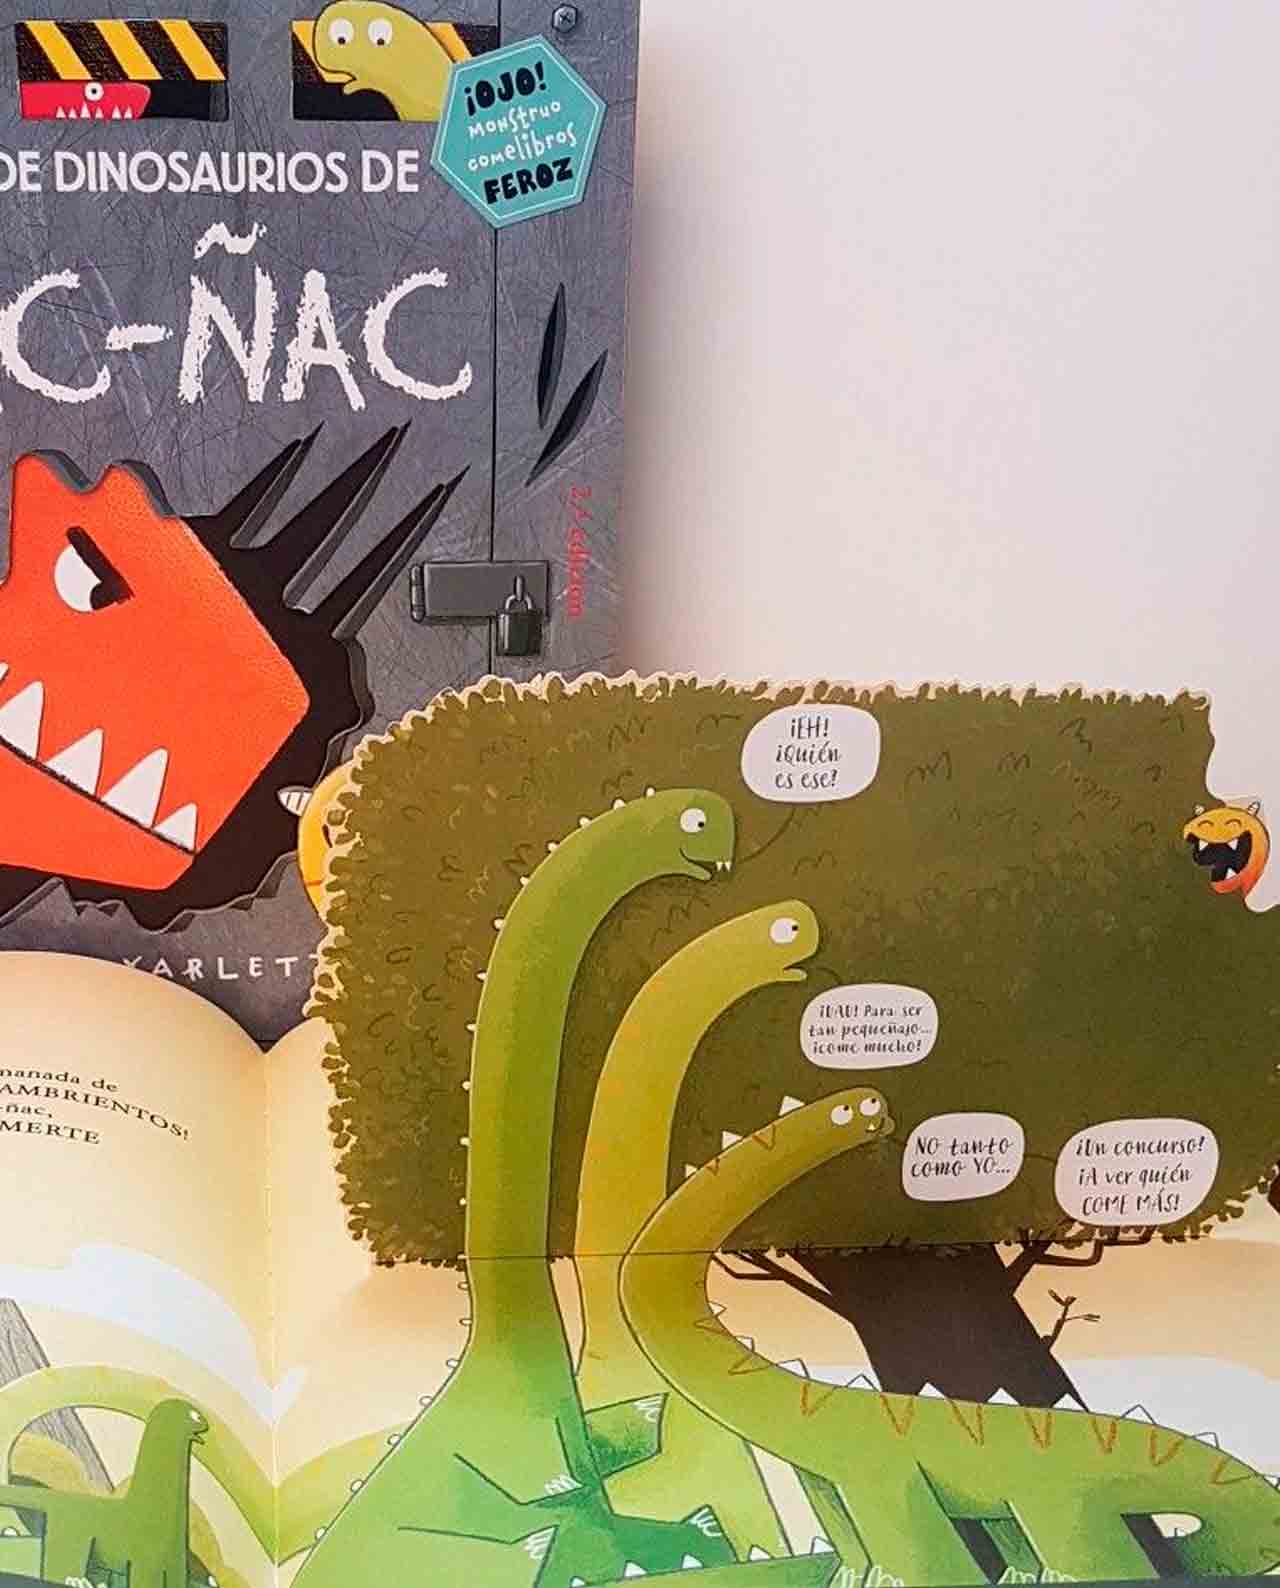 Libro La Guía de Dinosaurios de Ñac Ñac